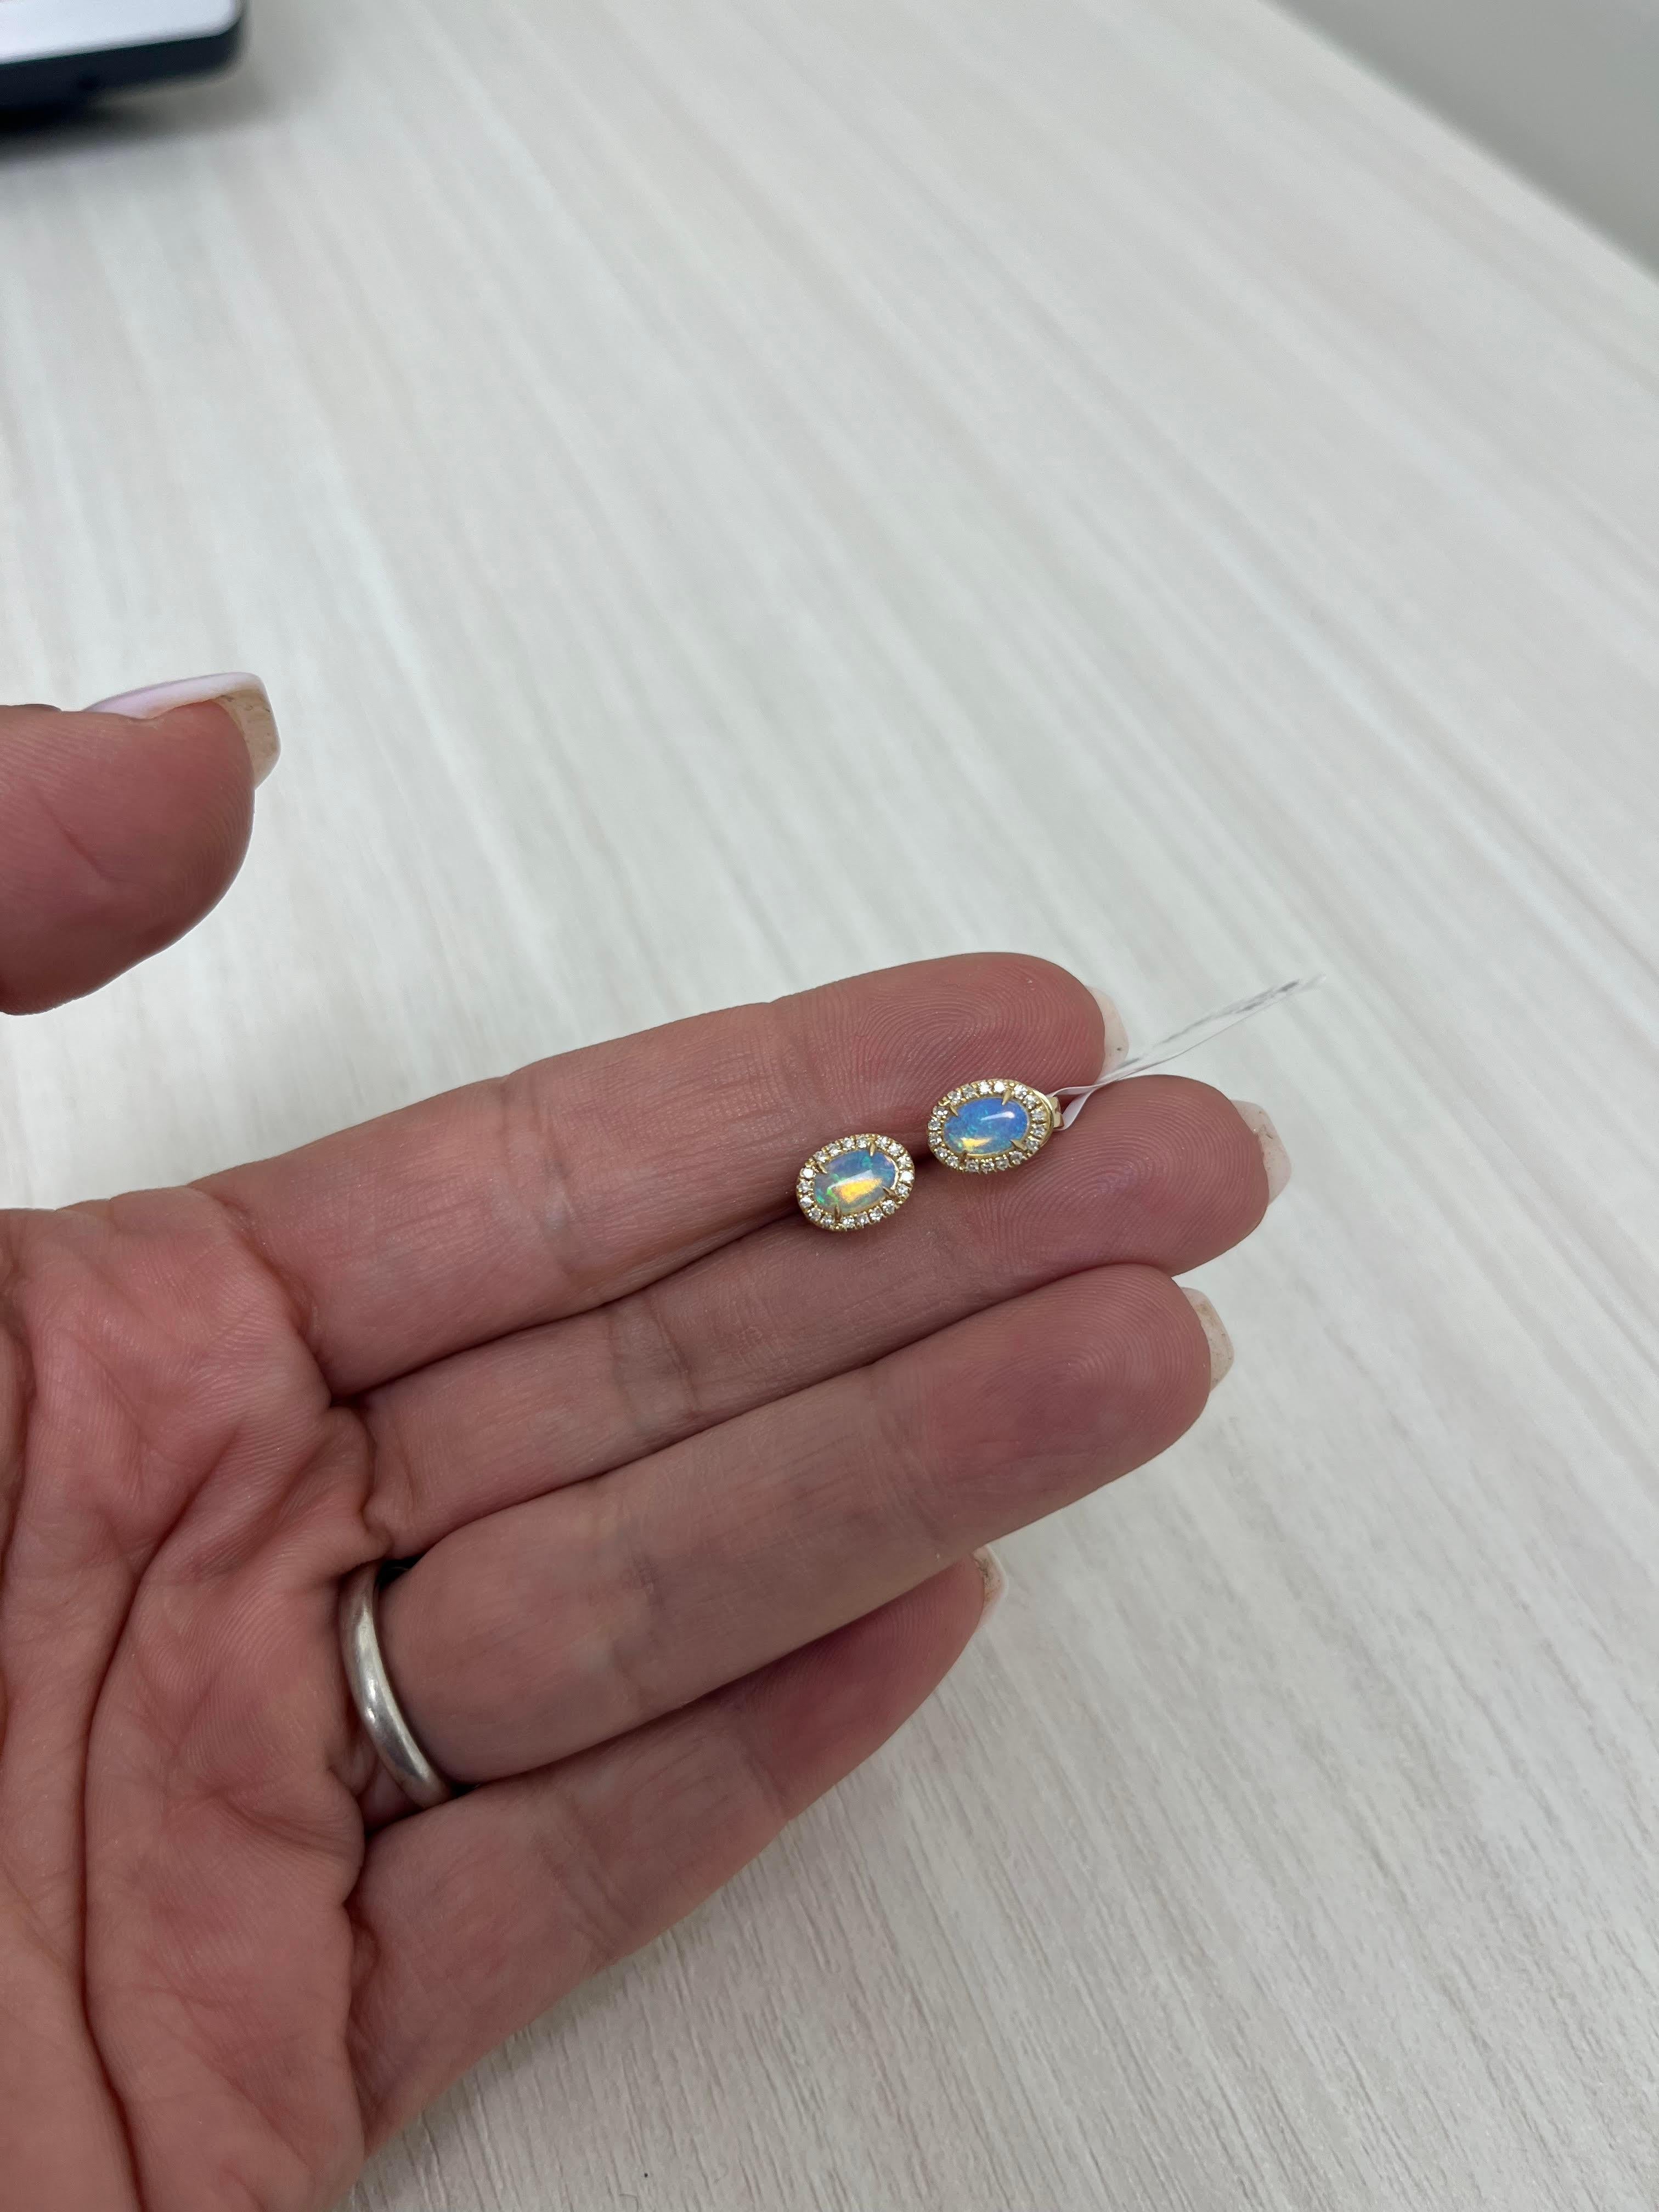 9ct gold opal stud earrings